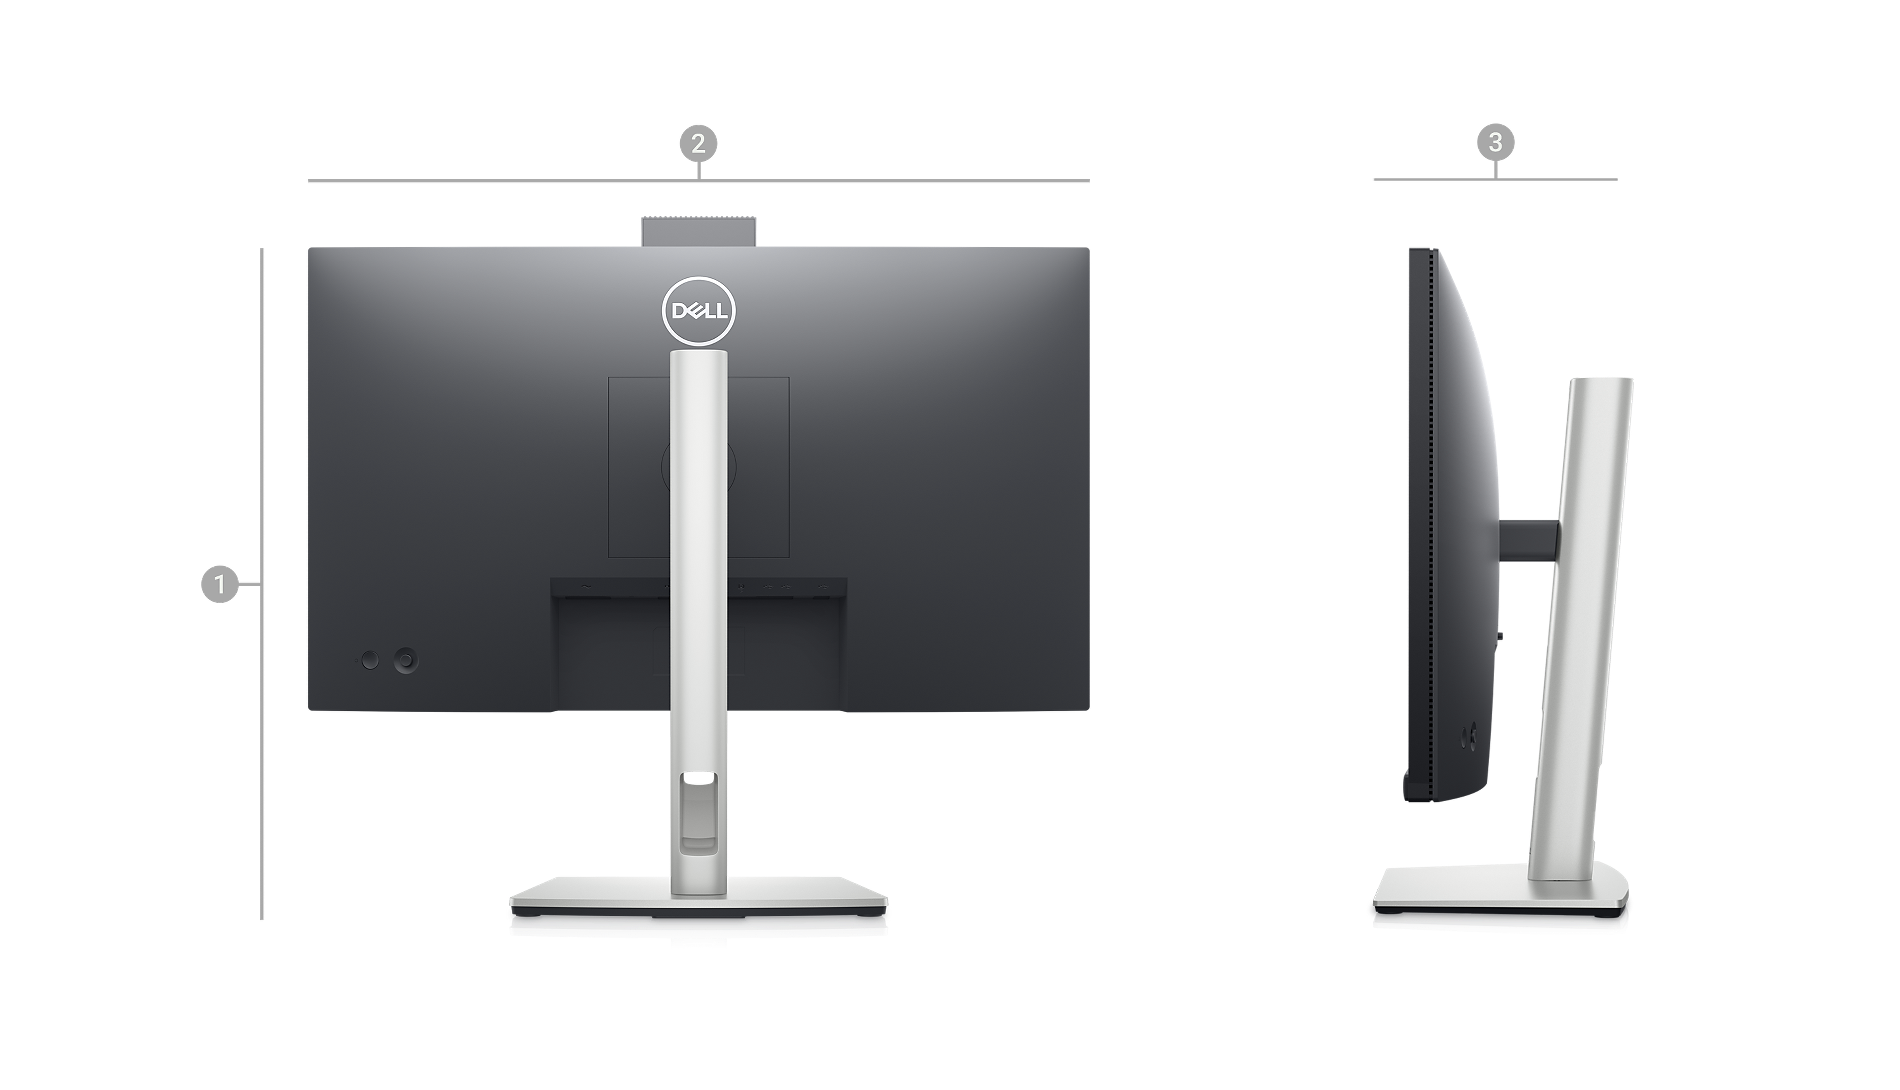 Bild des Dell C2423H Videokonferenzmonitors mit sichtbarer Rückseite und Zahlen, die die Produktabmessungen und das Gewicht anzeigen.